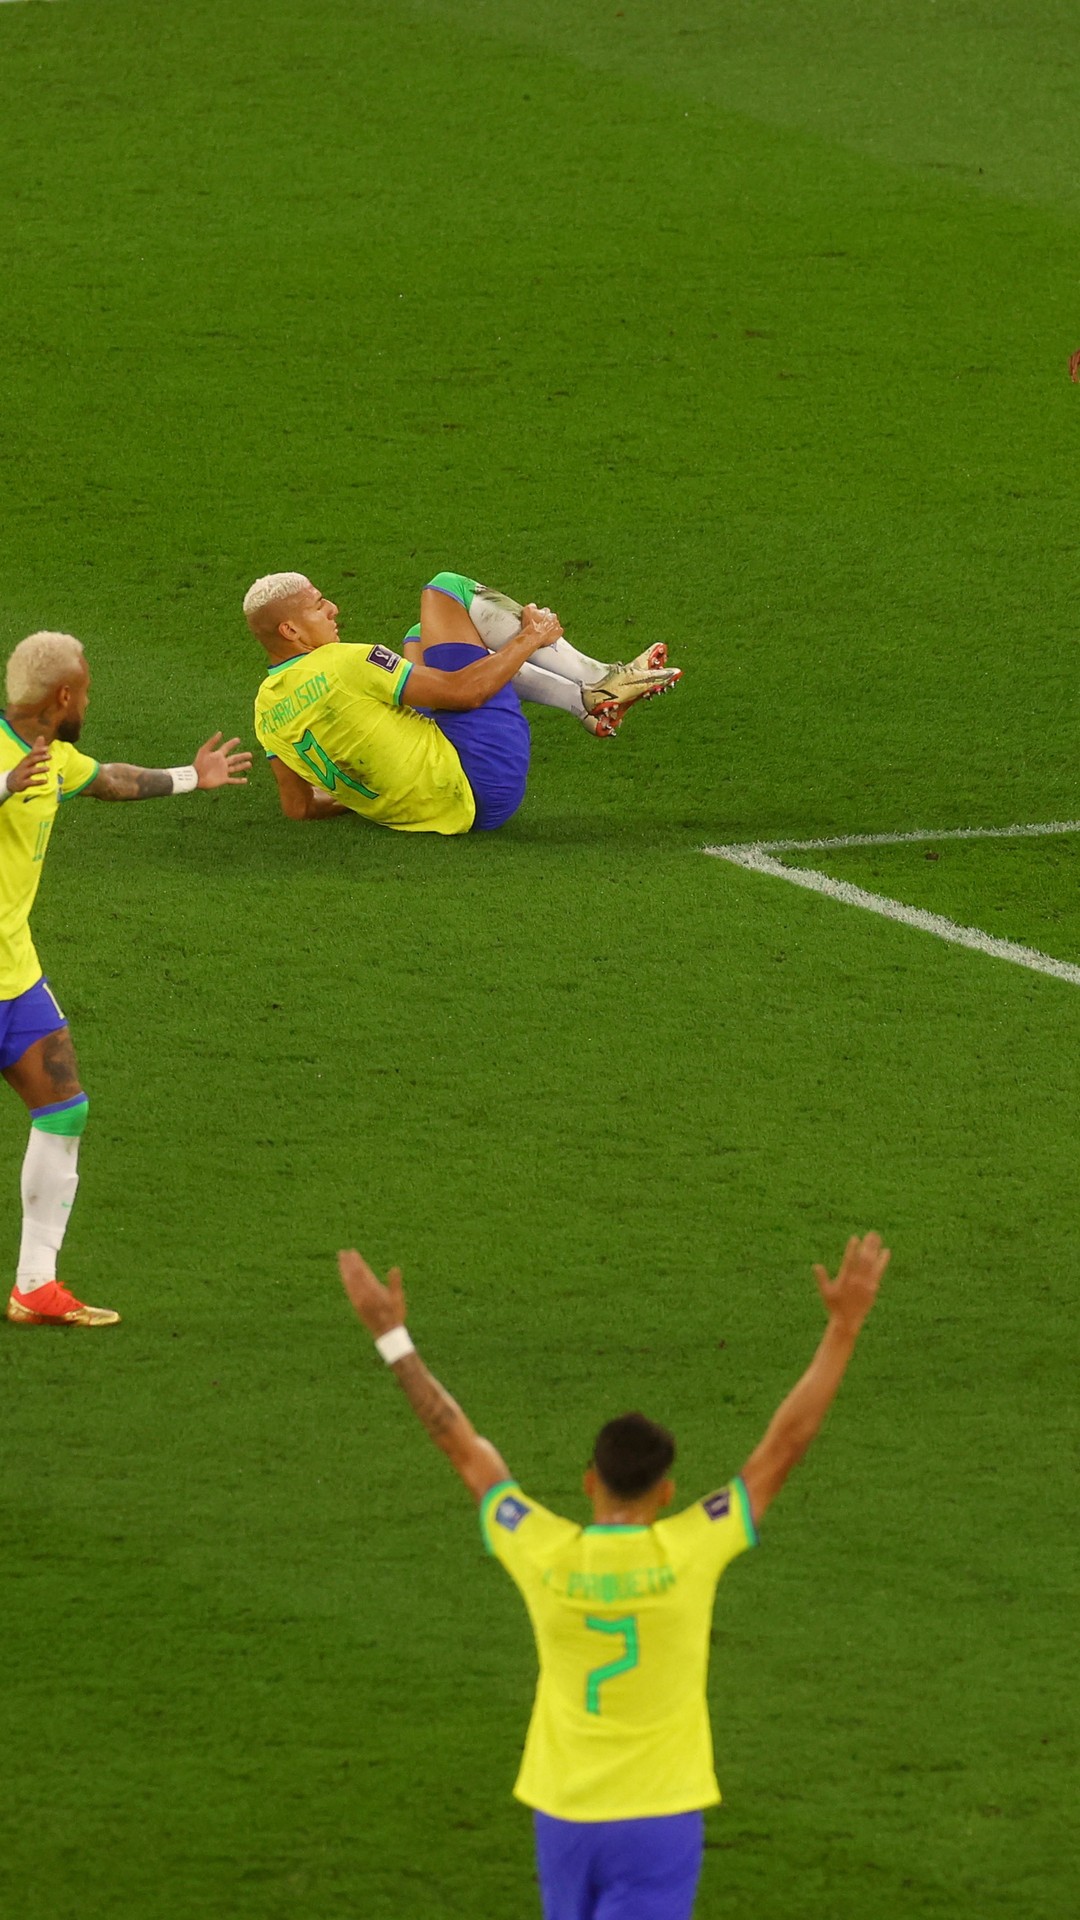 GazetaWeb - Árbitro francês apita jogo entre Brasil e Coreia do Sul